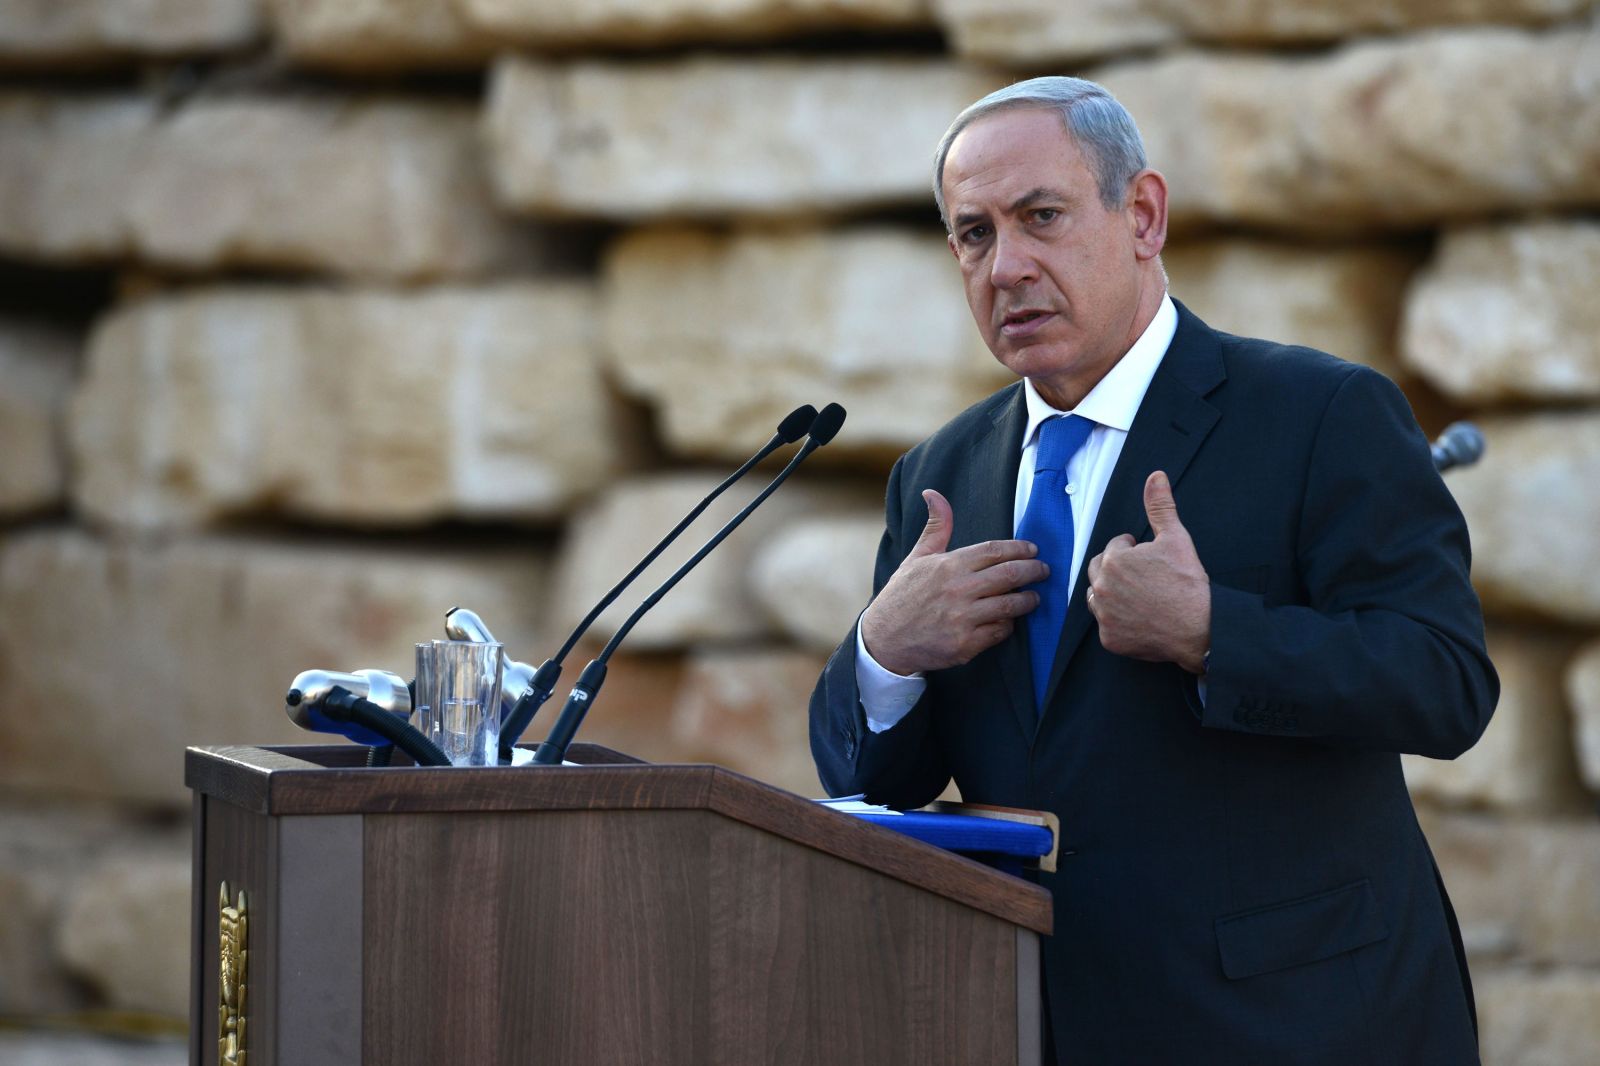   نتنياهو يسعى لإقامة منطقة عازلة على الحدود مع سوريا والأردن